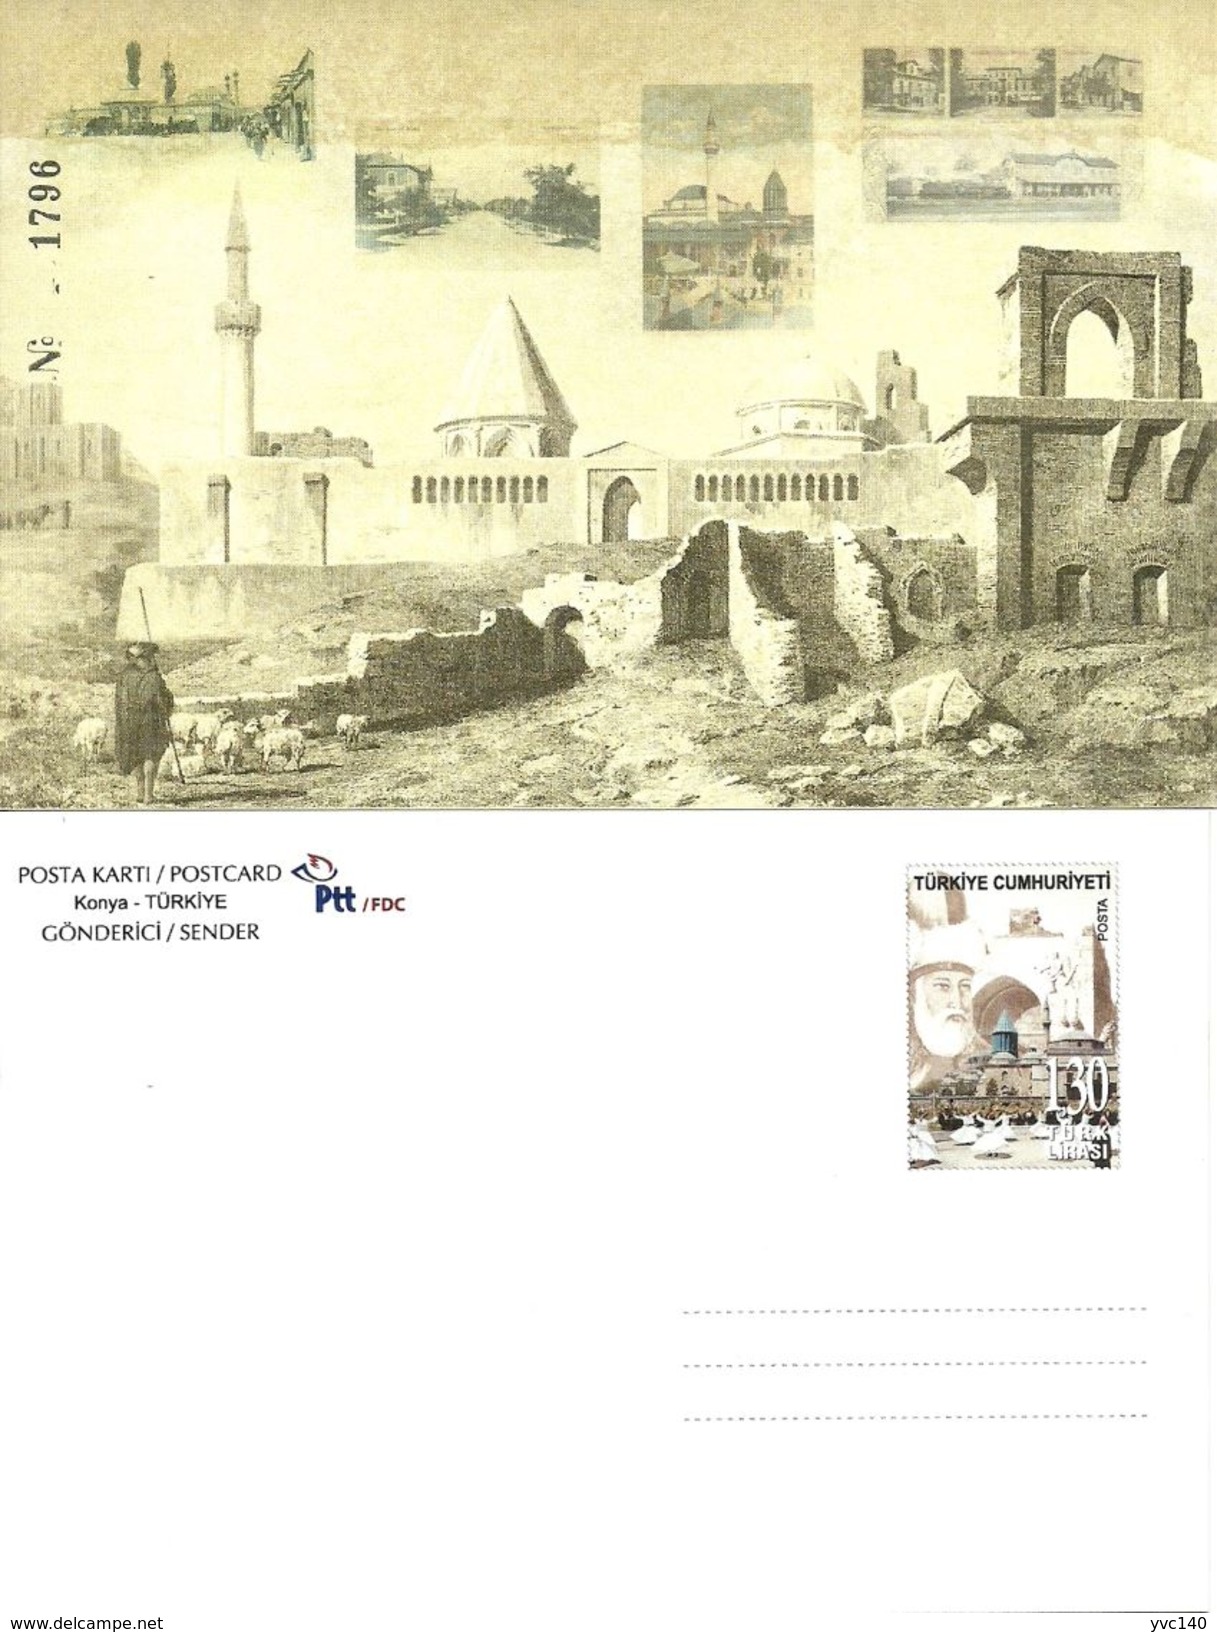 Turkey; 2011 "National Stamp Exhibition, Konya" Special Portfolio - Postwaardestukken